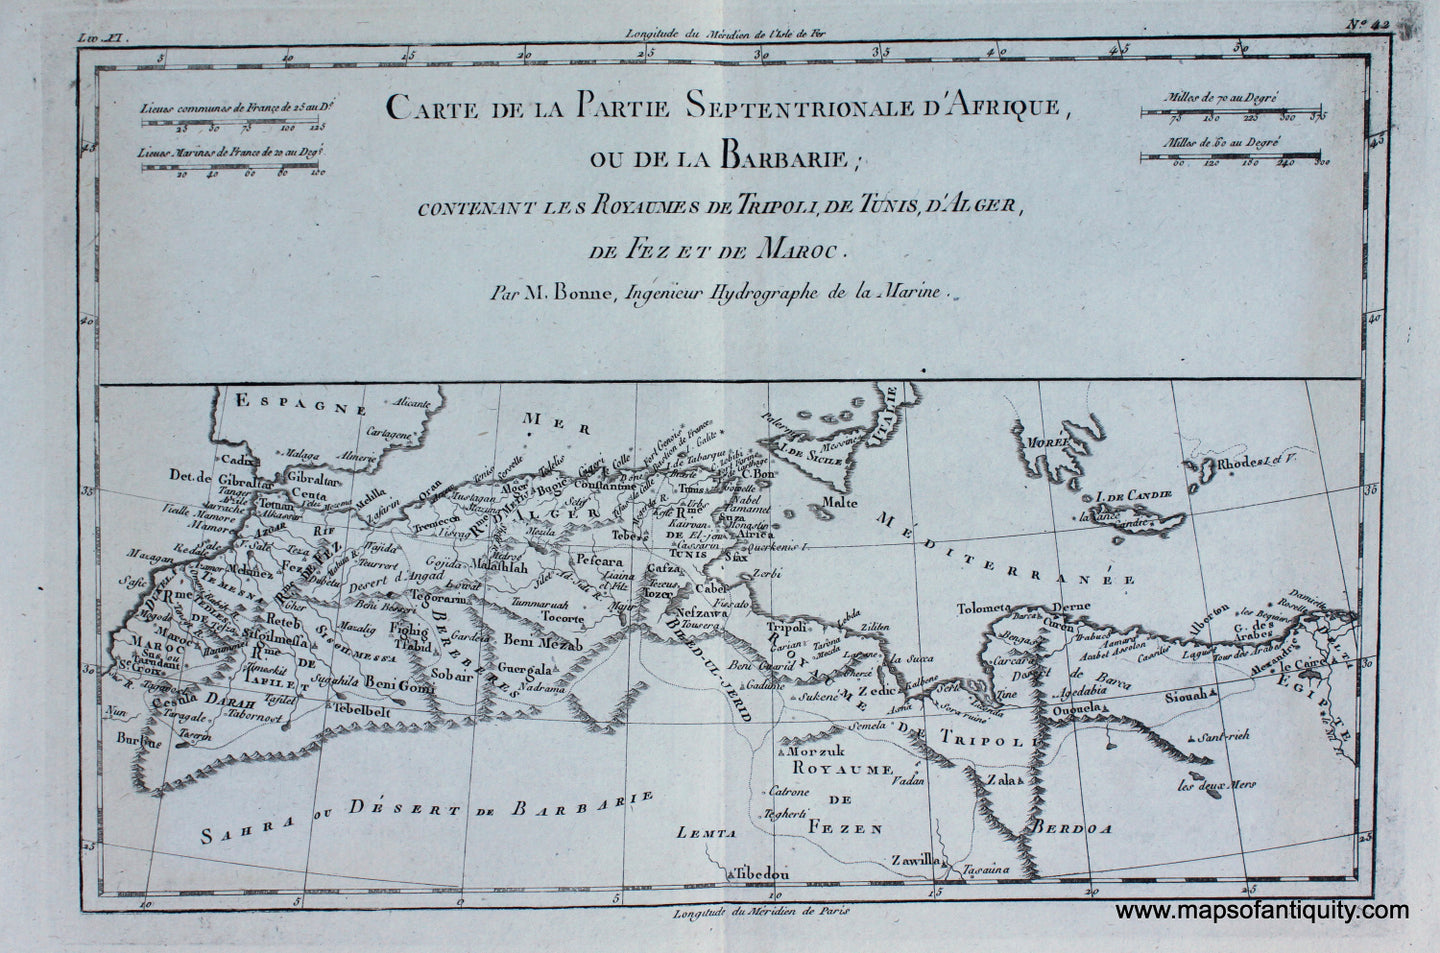 Antique-Black-and-White-Map-Carte-de-La-Partie-Septentrionale-d'Afrique-ou-la-Barbarie-etc.--Africa--1780-Raynal-and-Bonne-Maps-Of-Antiquity